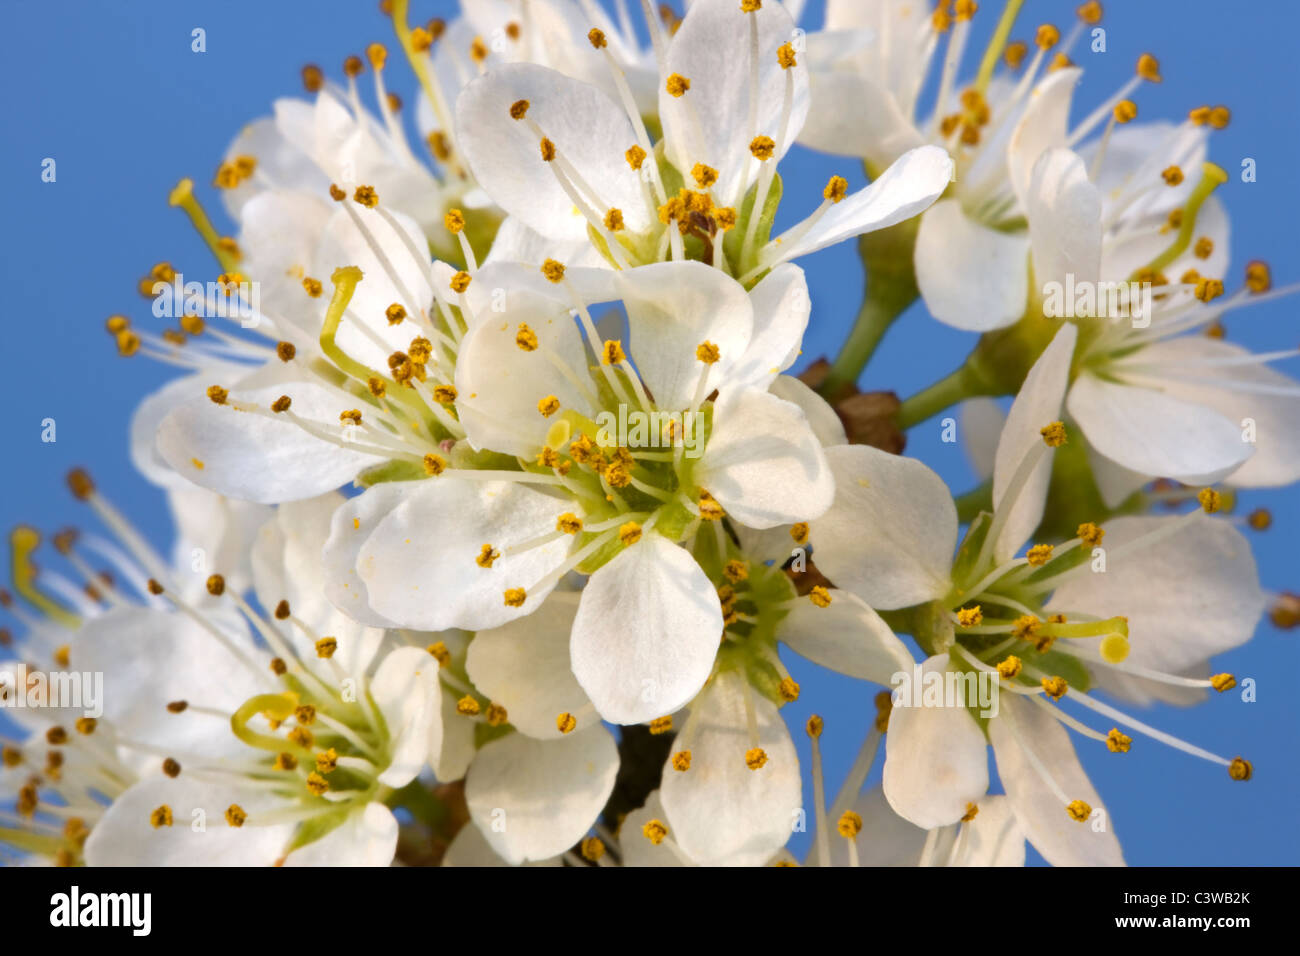 Blackthorn / Sloe (Prunus spinosa) flowering in spring, Belgium Stock Photo